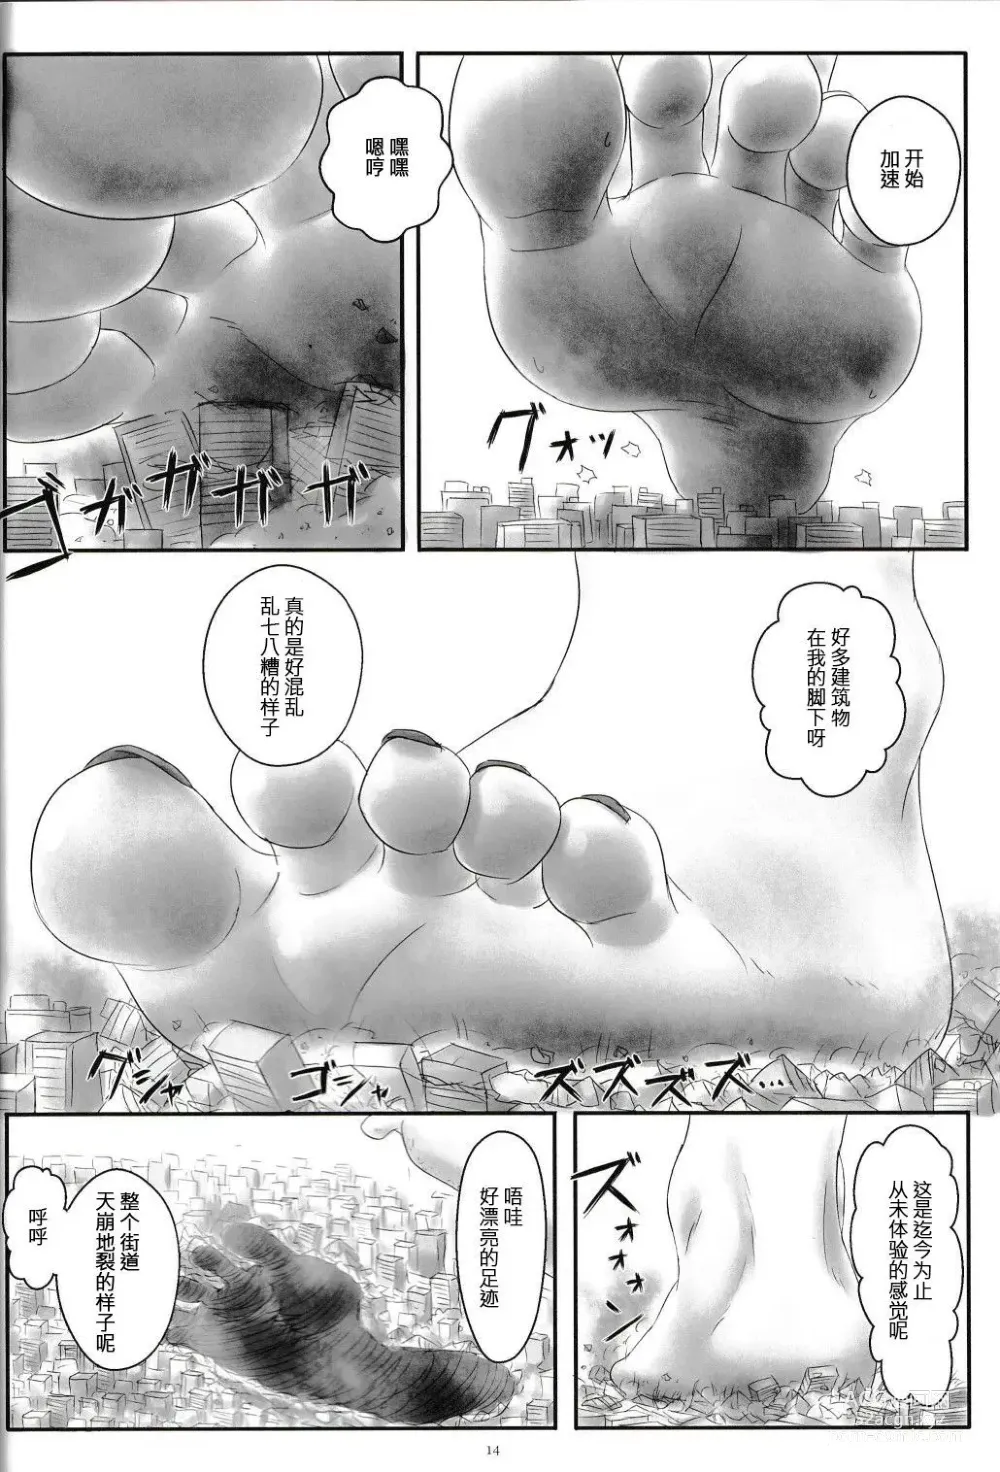 Page 26 of doujinshi 自我翻译（九）gw论坛转载，落叶秋风